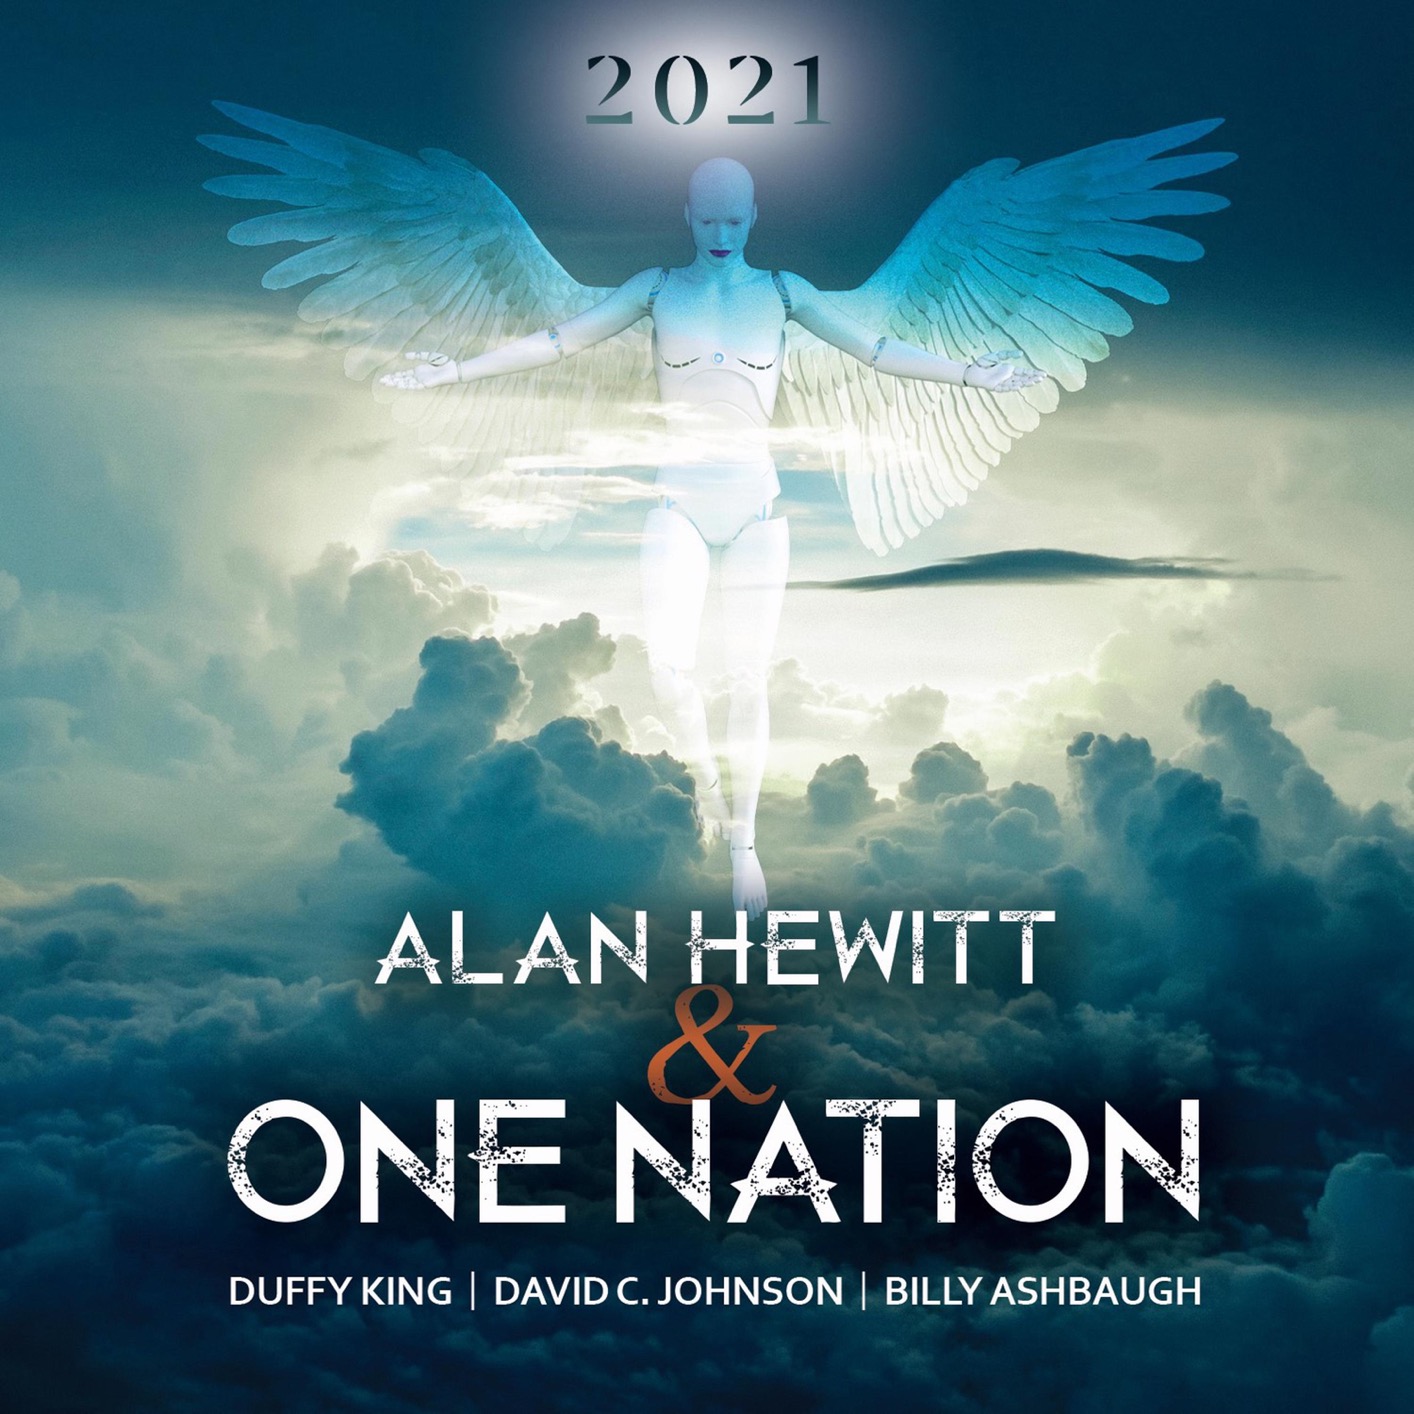 Alan Hewitt & One Nation – 2021 (2021) [FLAC 24bit/48kHz]